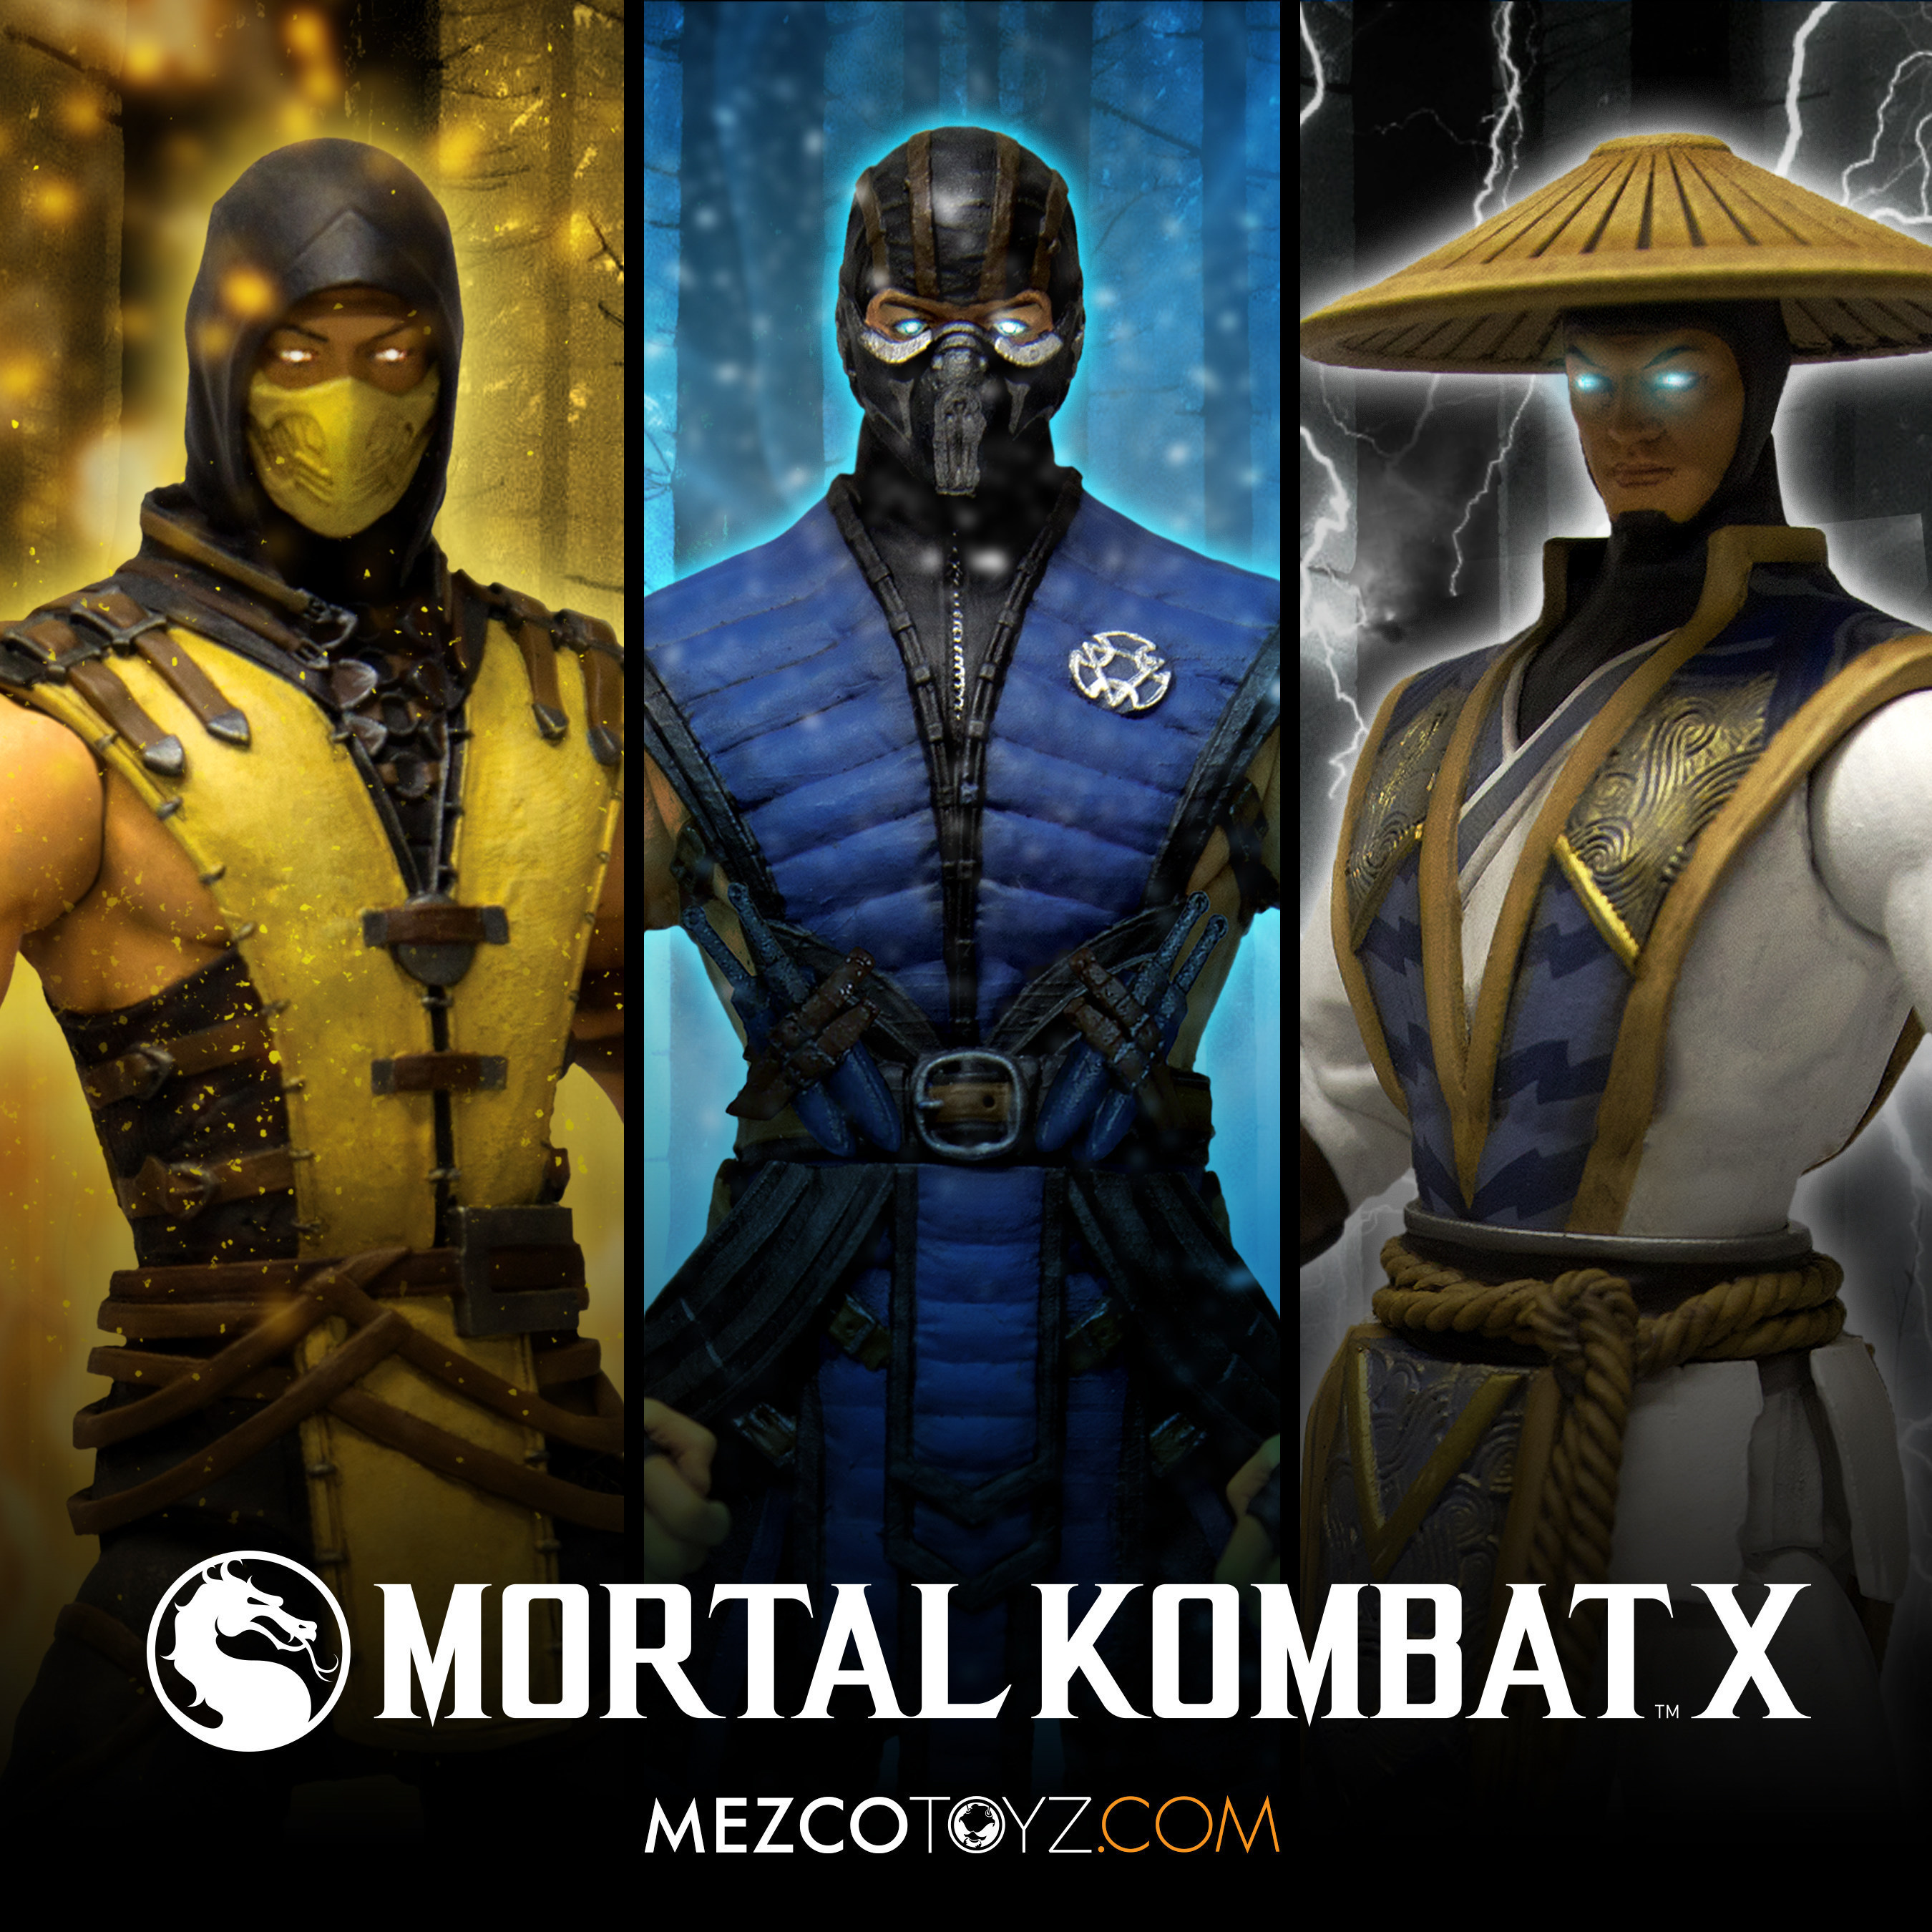 Mezco Reveals Mortal Kombat X Figures At Toy Fair